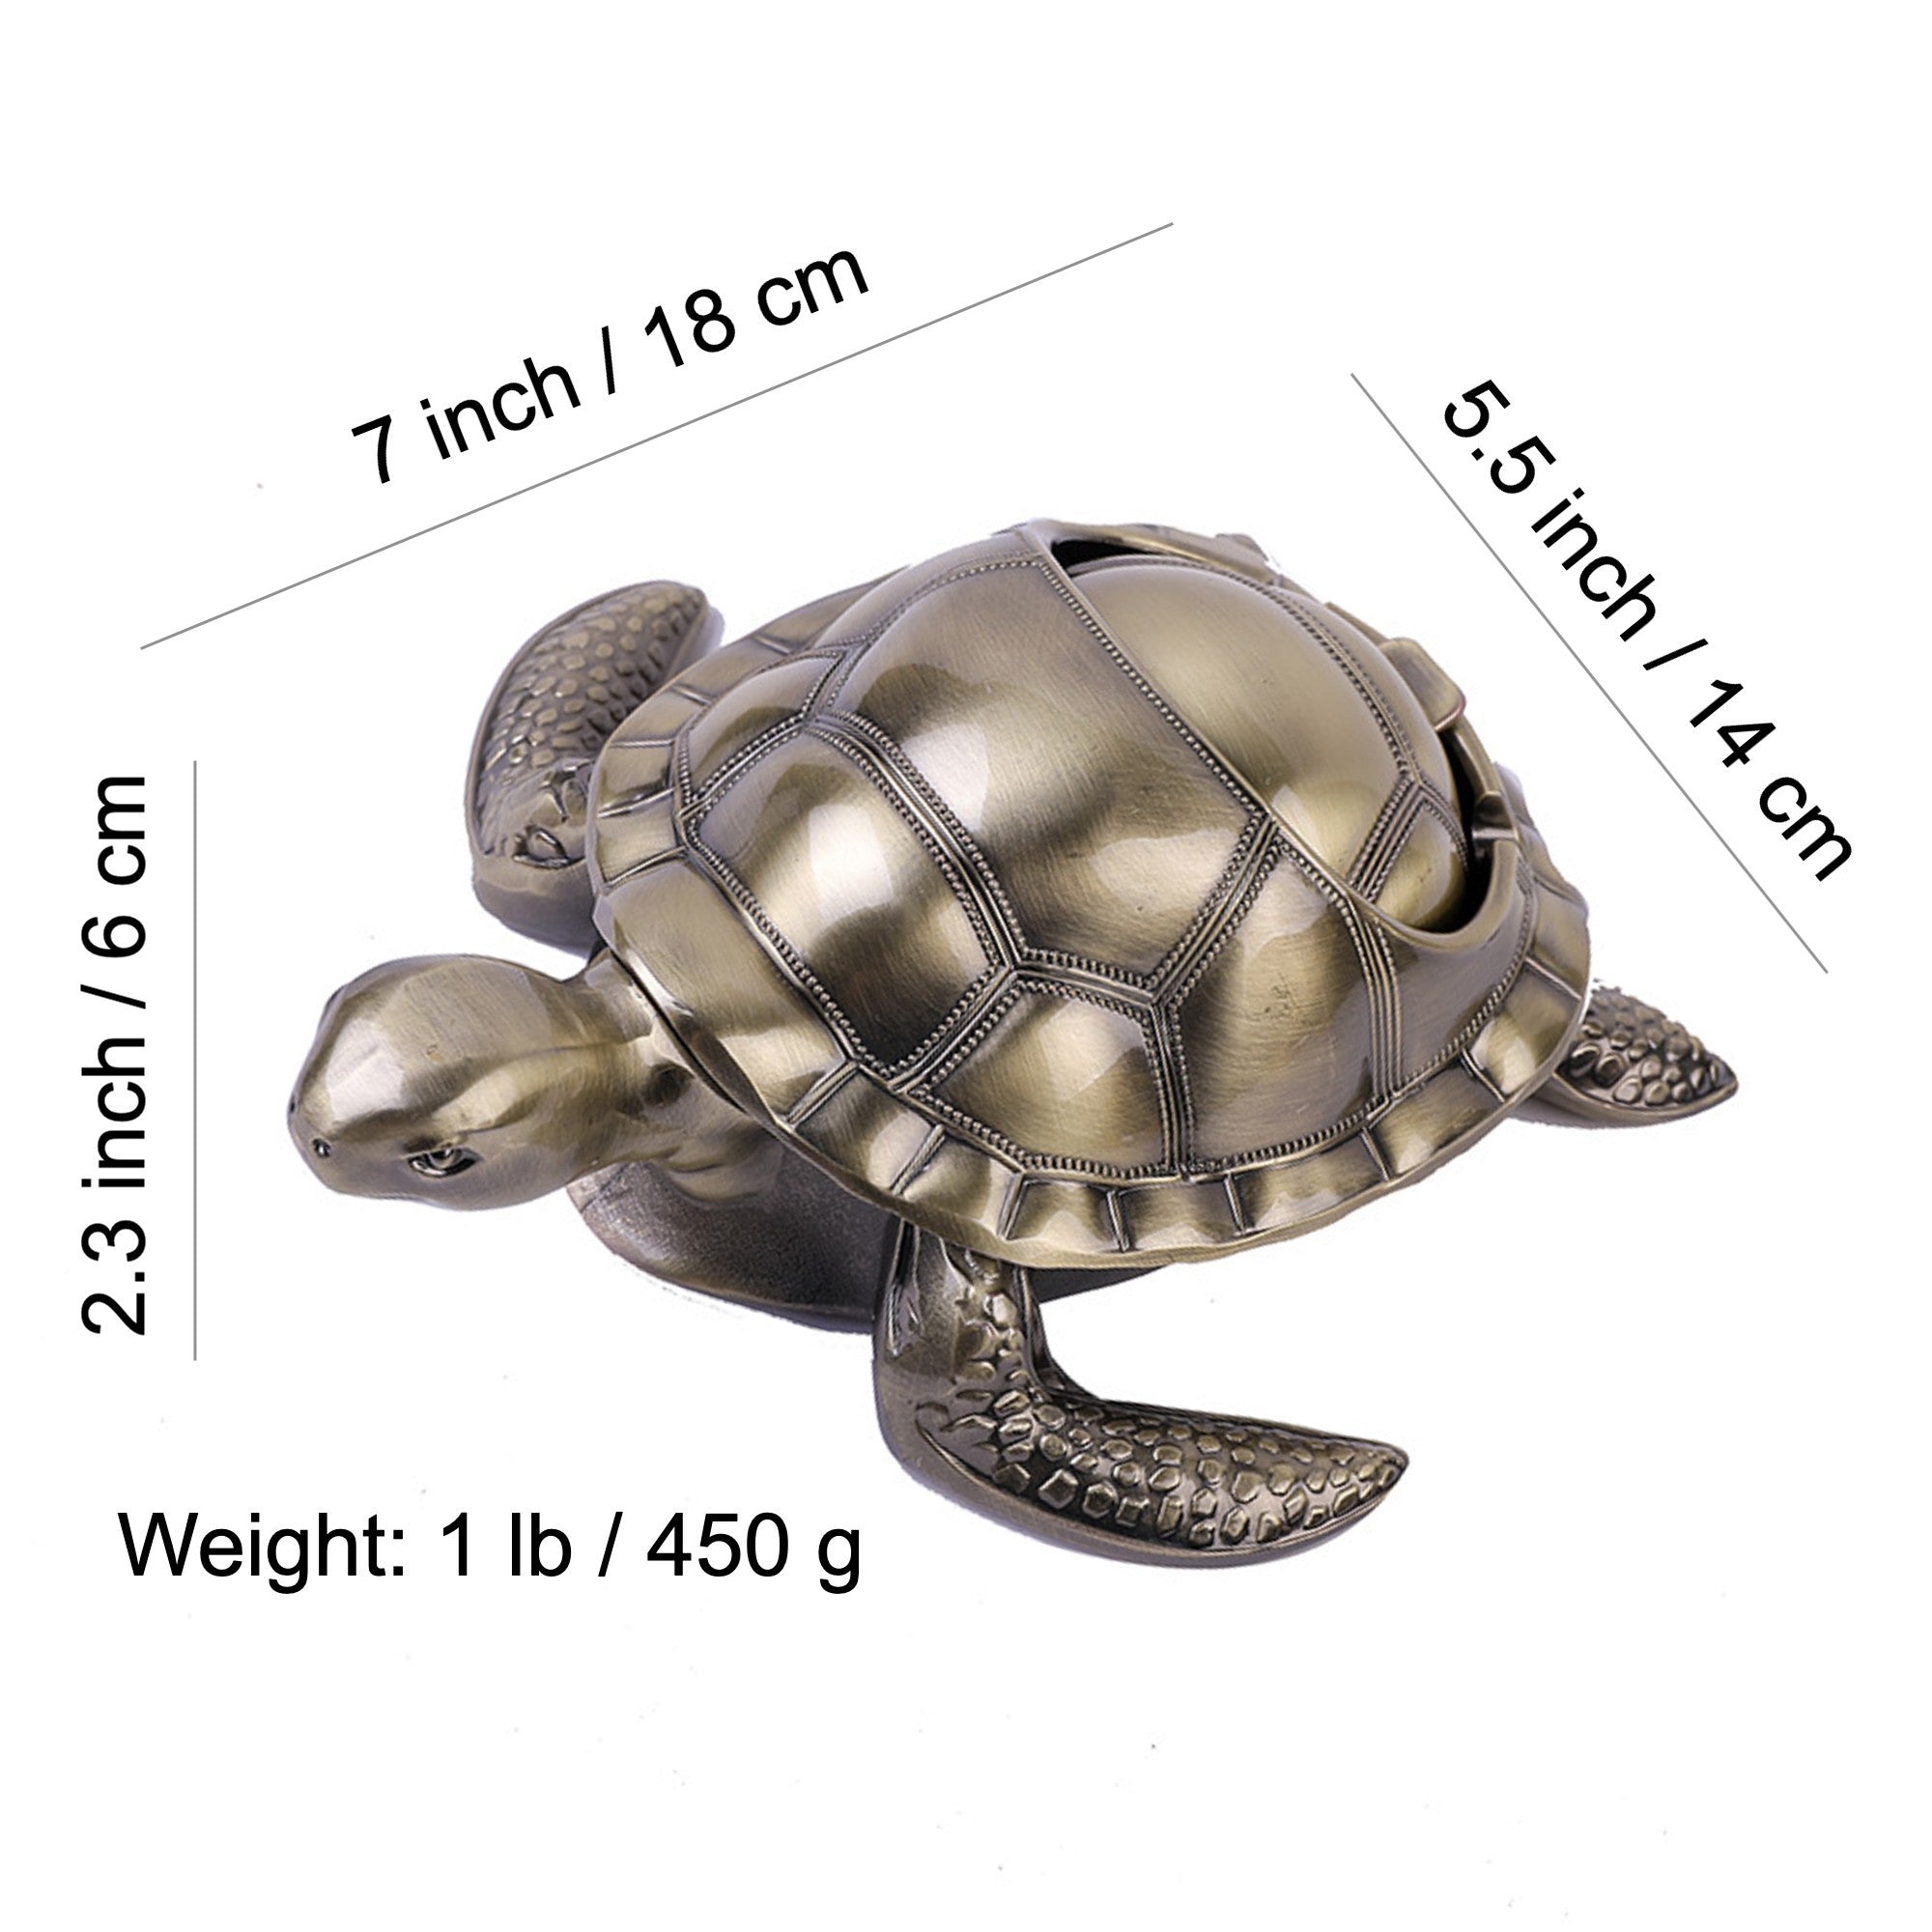 Schildkröte/Tortoise/Turtle ASCHENBECHER / Ashtray